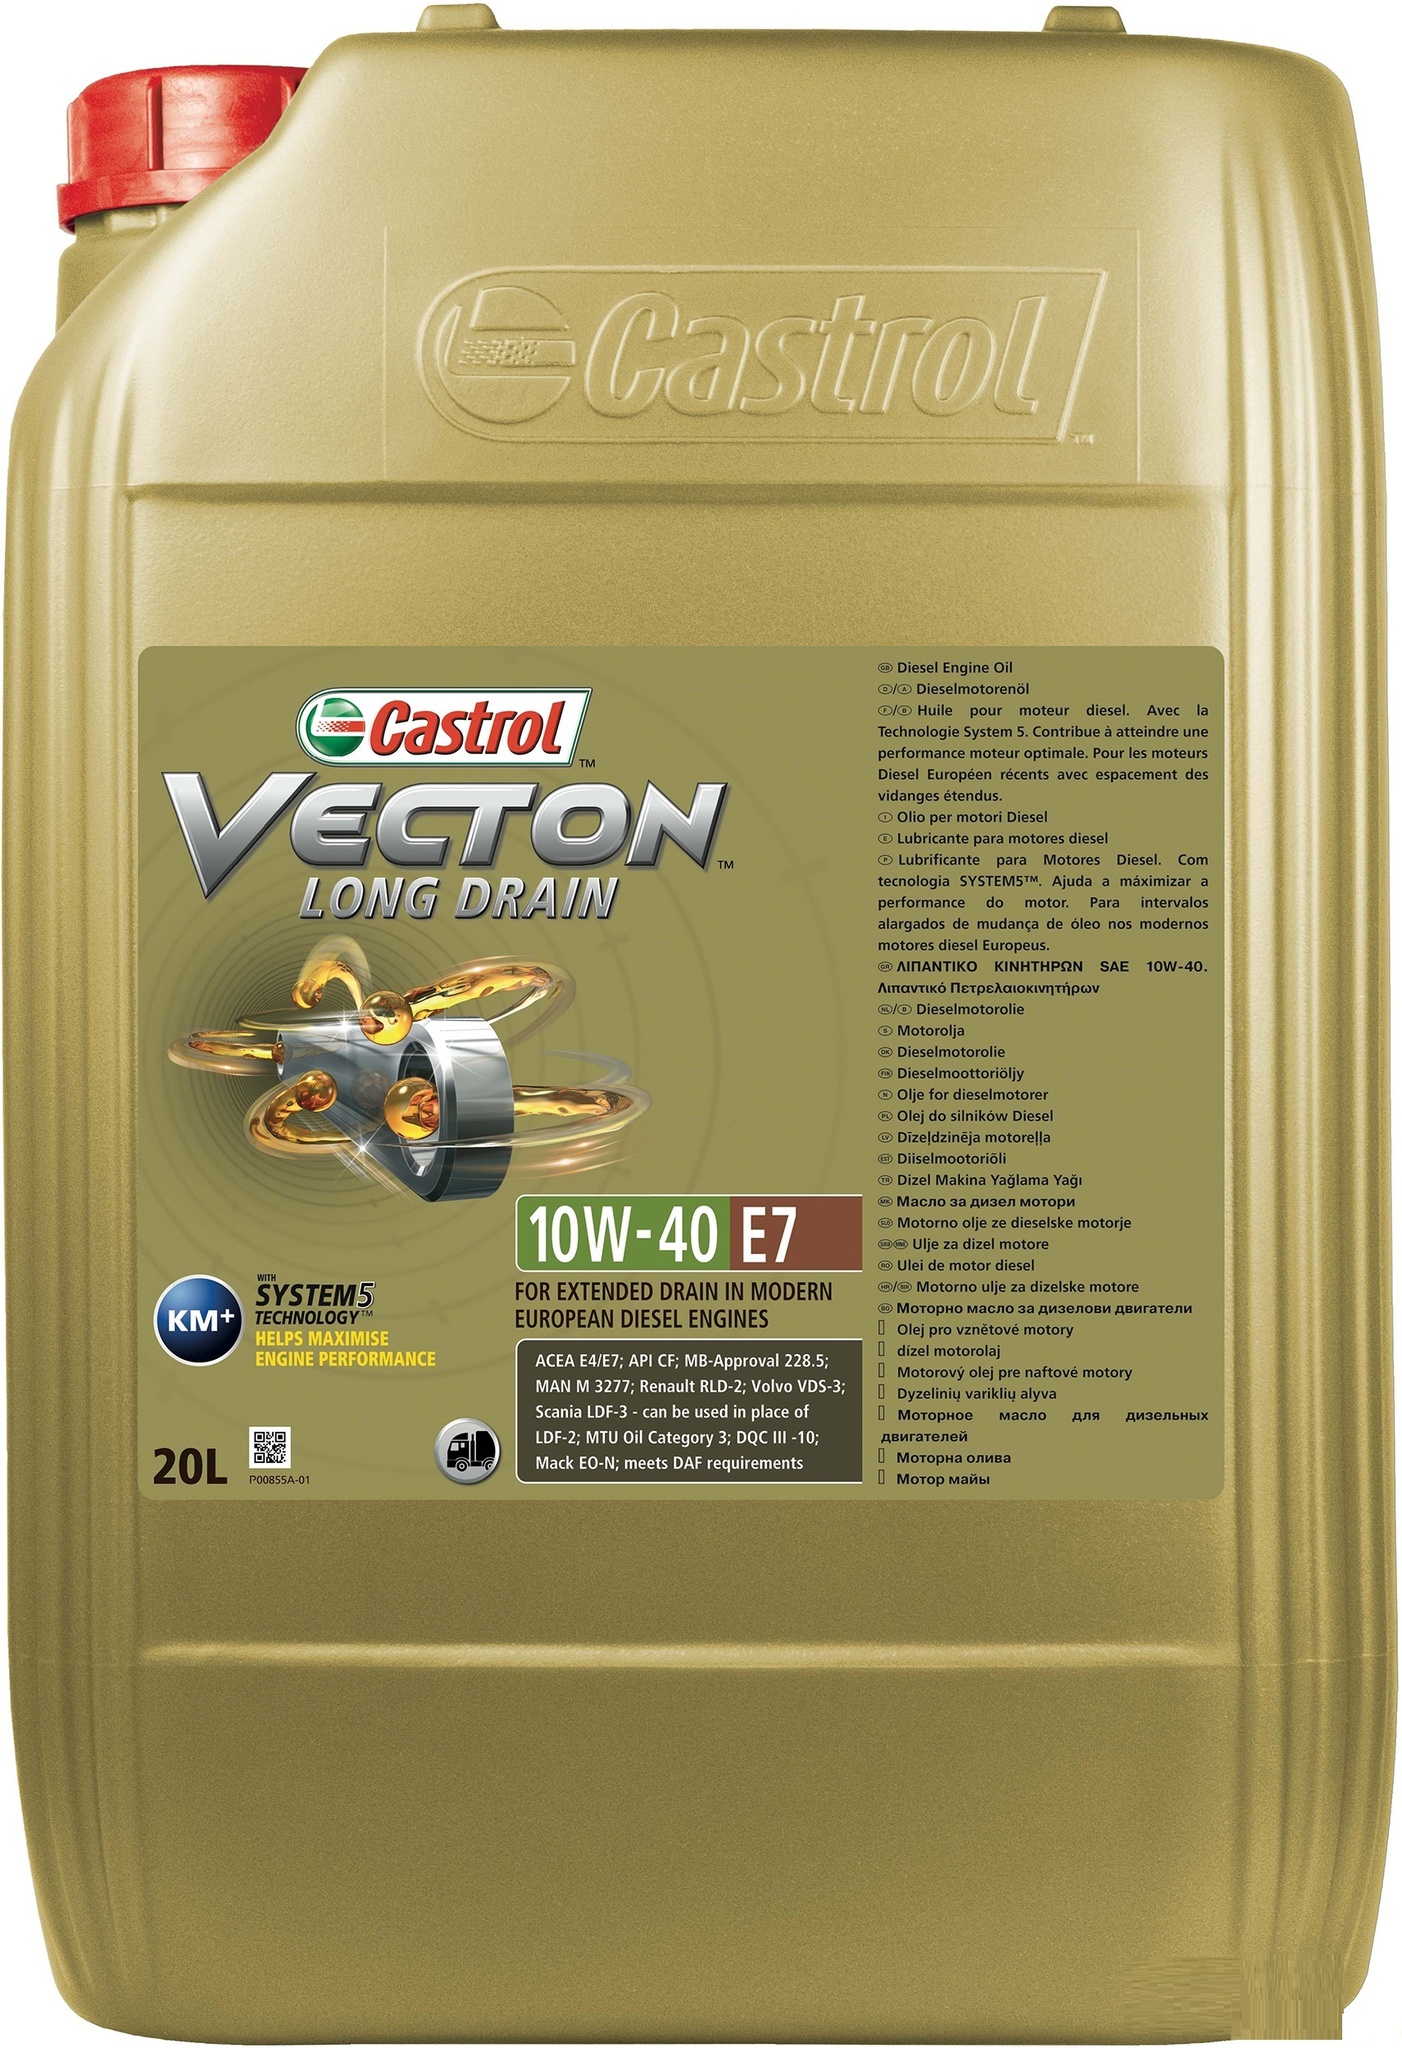 Castrol Vecton Long Drain E7 10W40 Дизельное масло для коммерческой техники